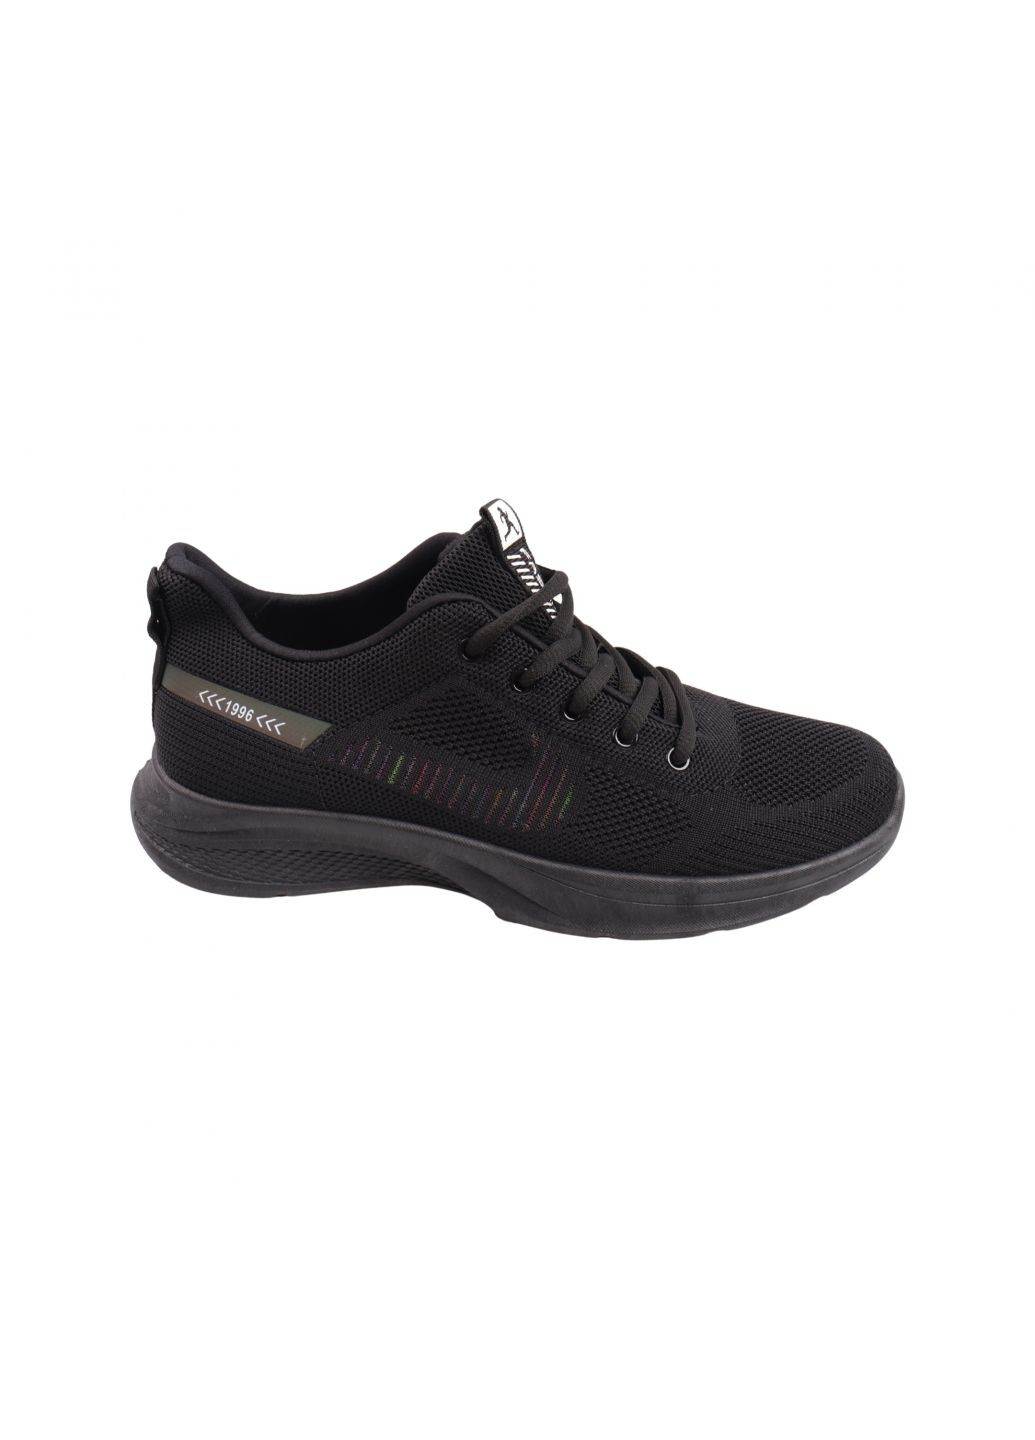 Черные кроссовки мужские черные текстиль Fashion 58-23LK